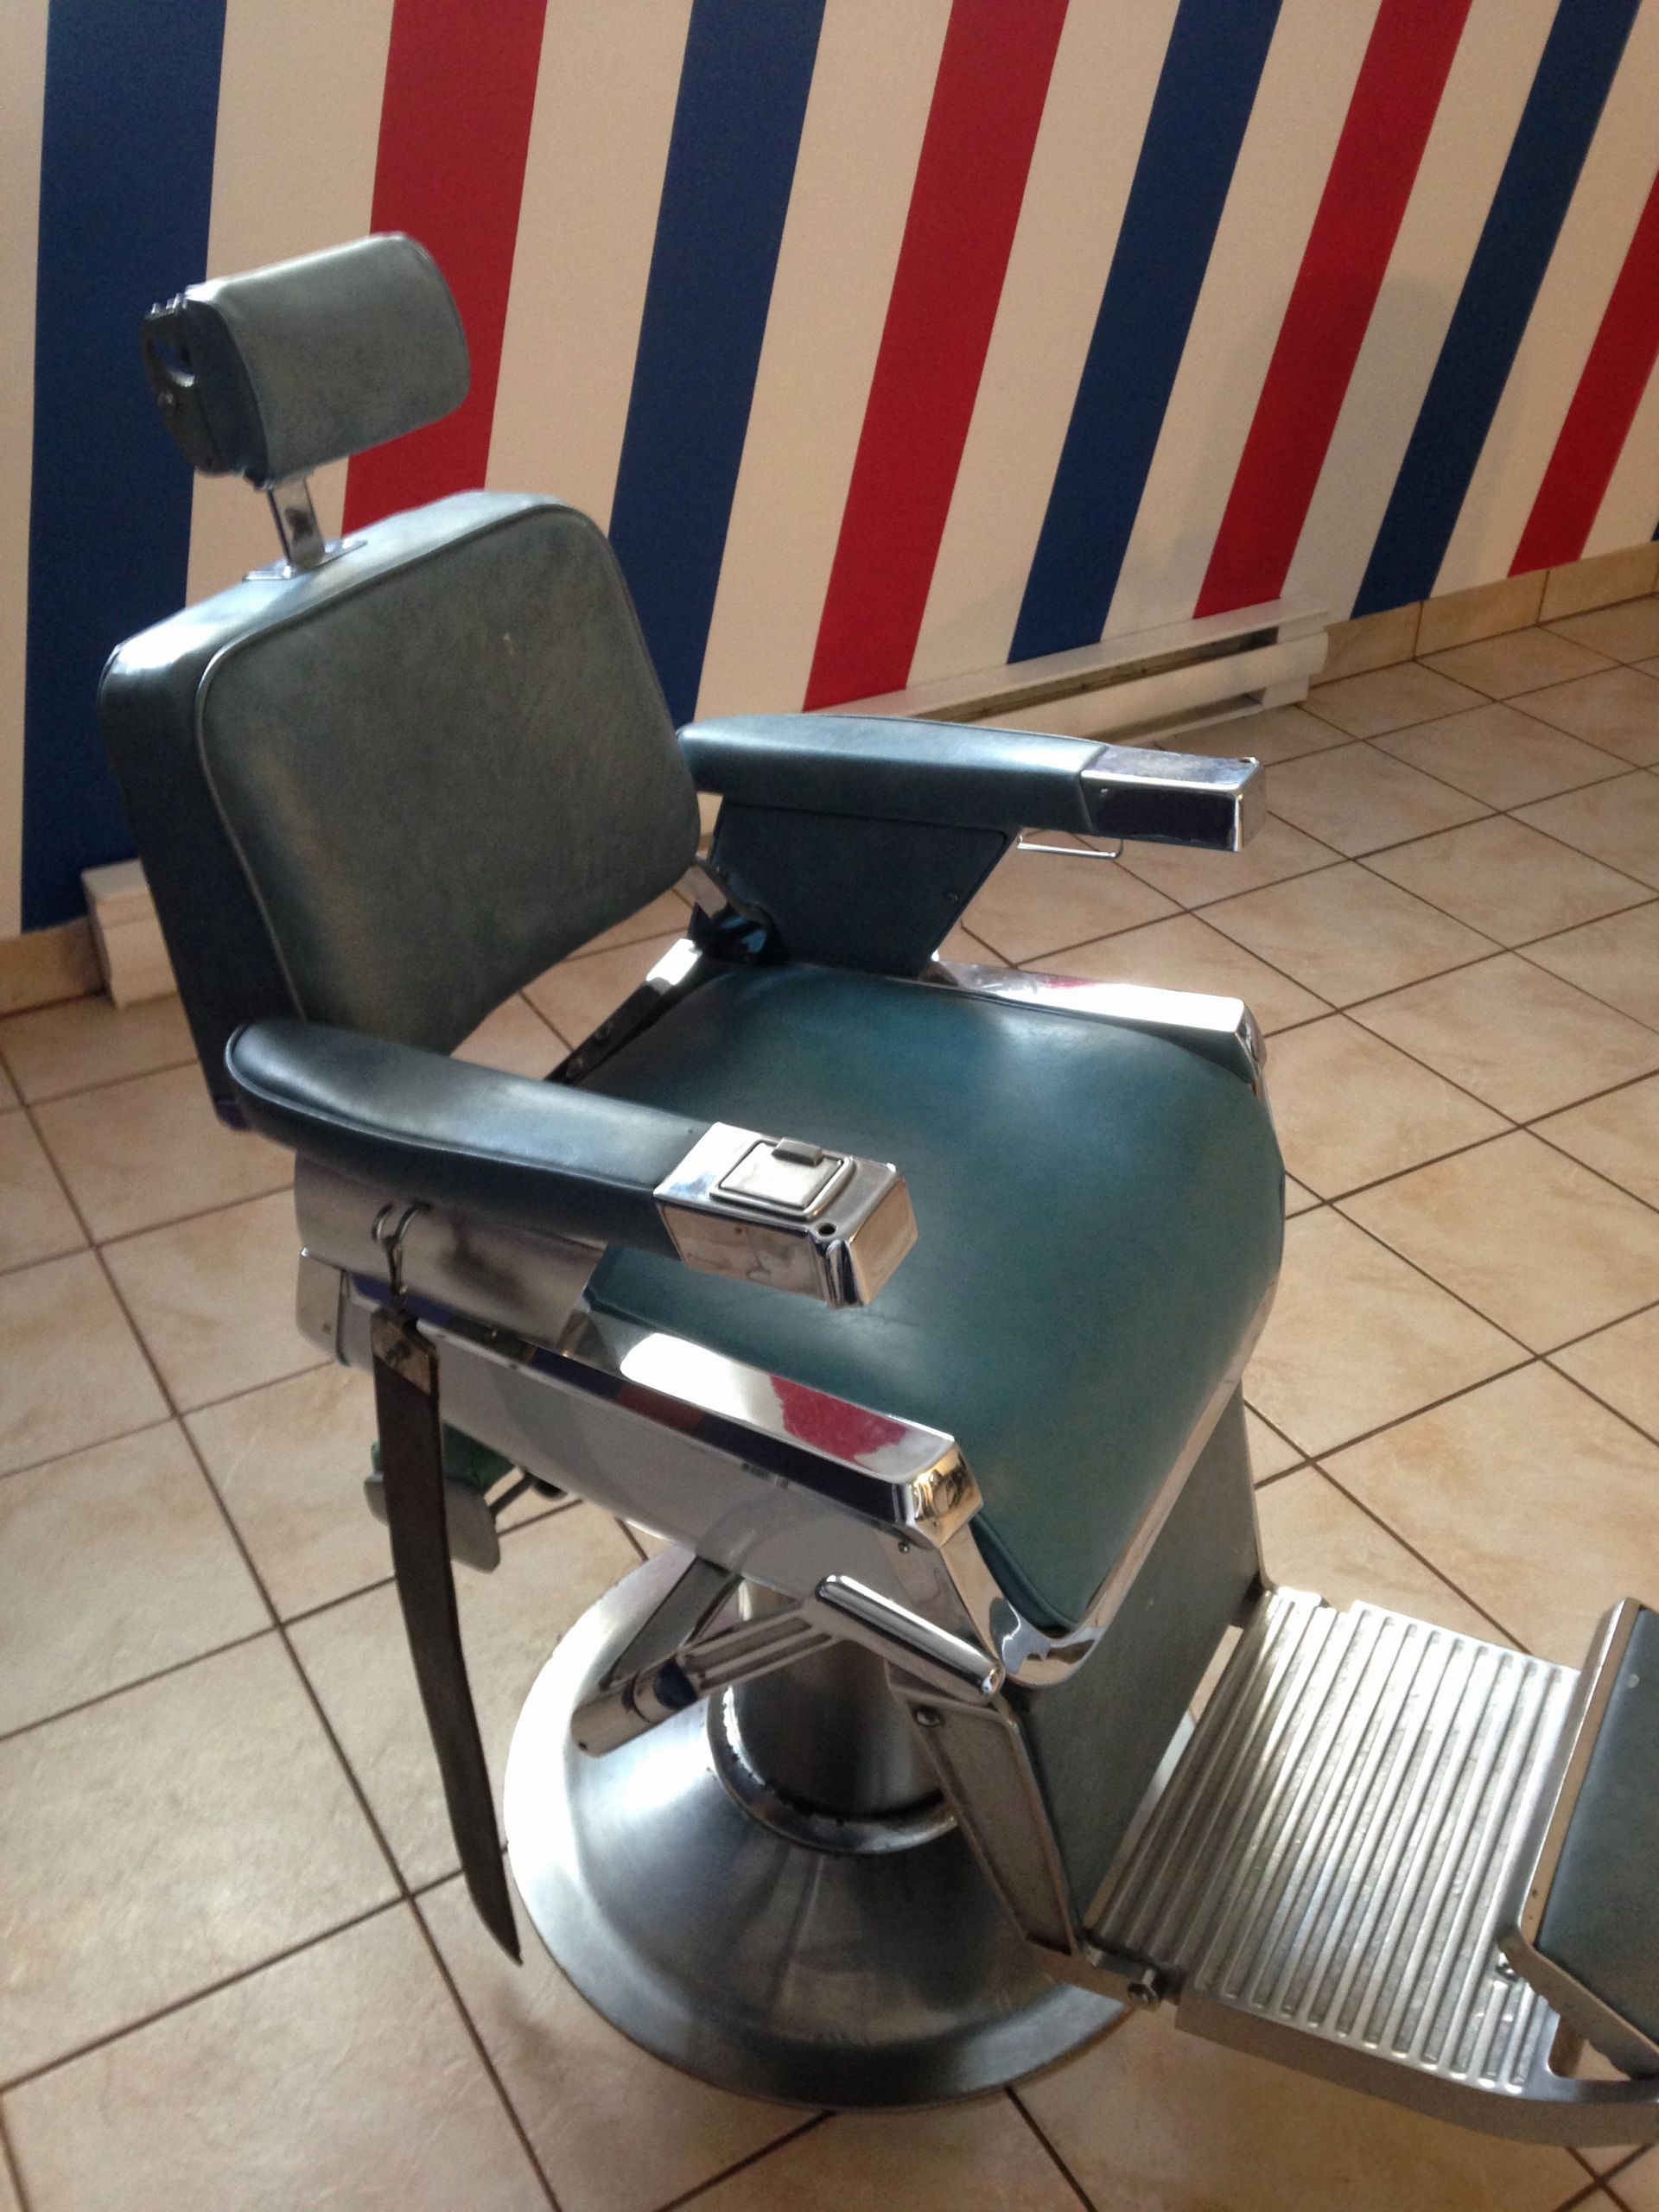 fauteuil barbier pas cher photo de fauteuil barbier belmont occasion frais image fauteuil de coiffure of fauteuil barbier pas cher